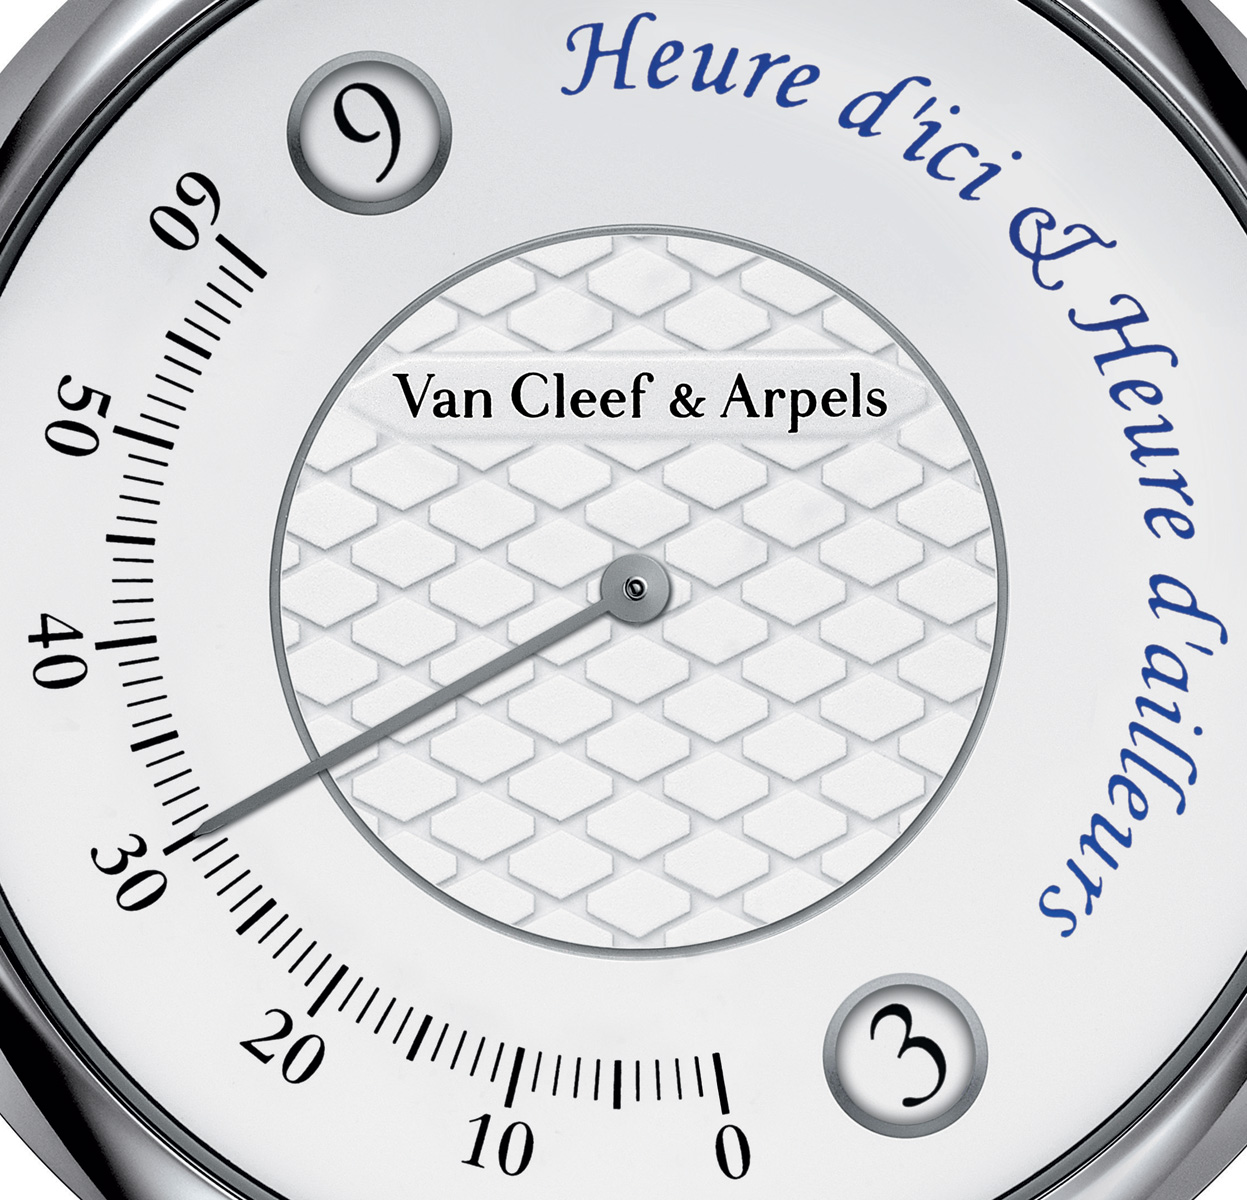 Van Cleef & Arpels - Oracle Time